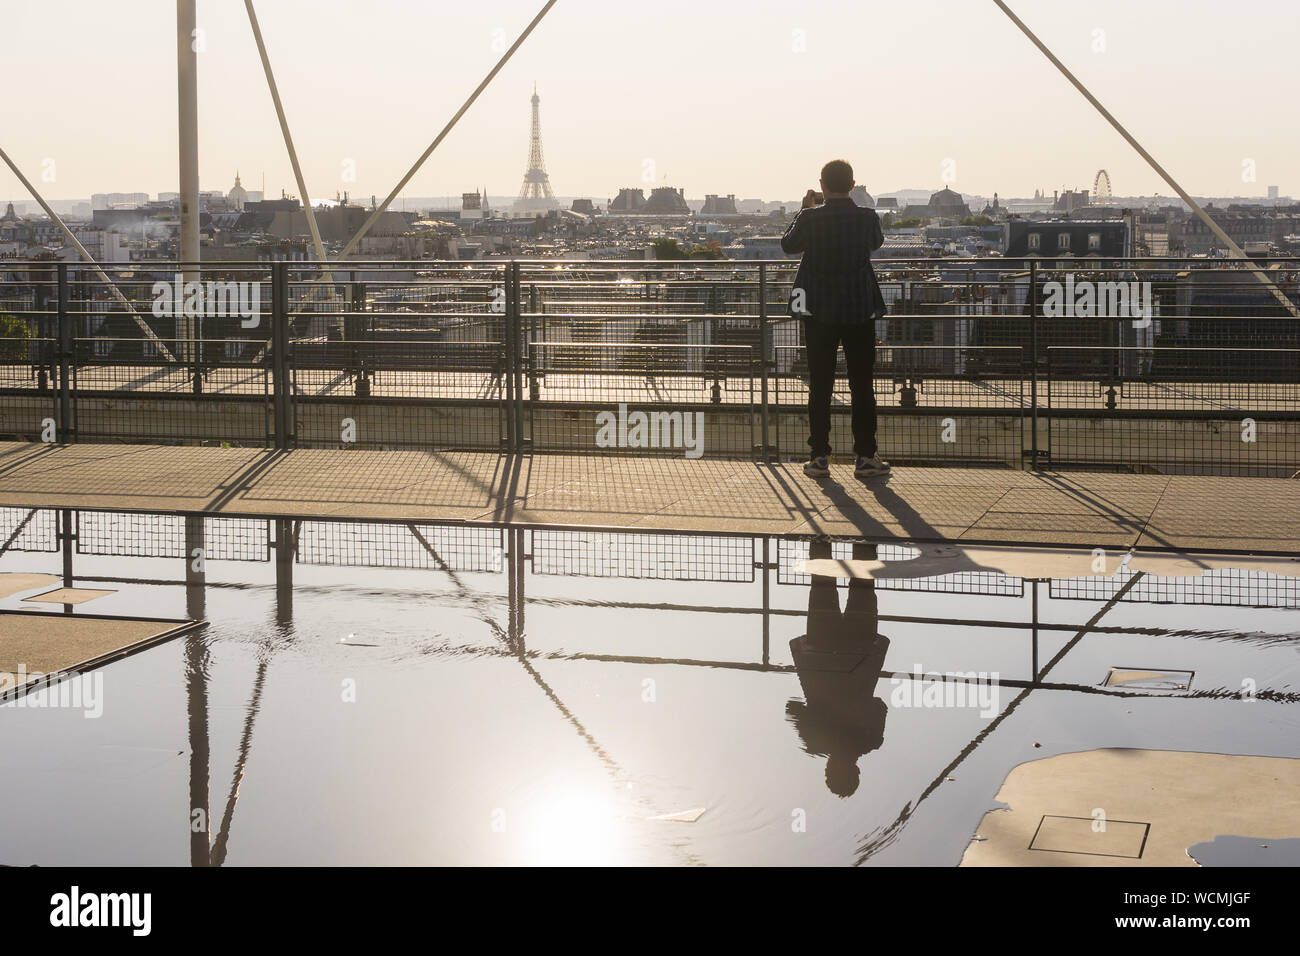 Paris Centre Pompidou - Touristische fotografieren der Pariser Skyline von der Aussichtsplattform des Centre Pompidou. Frankreich, Europa. Stockfoto